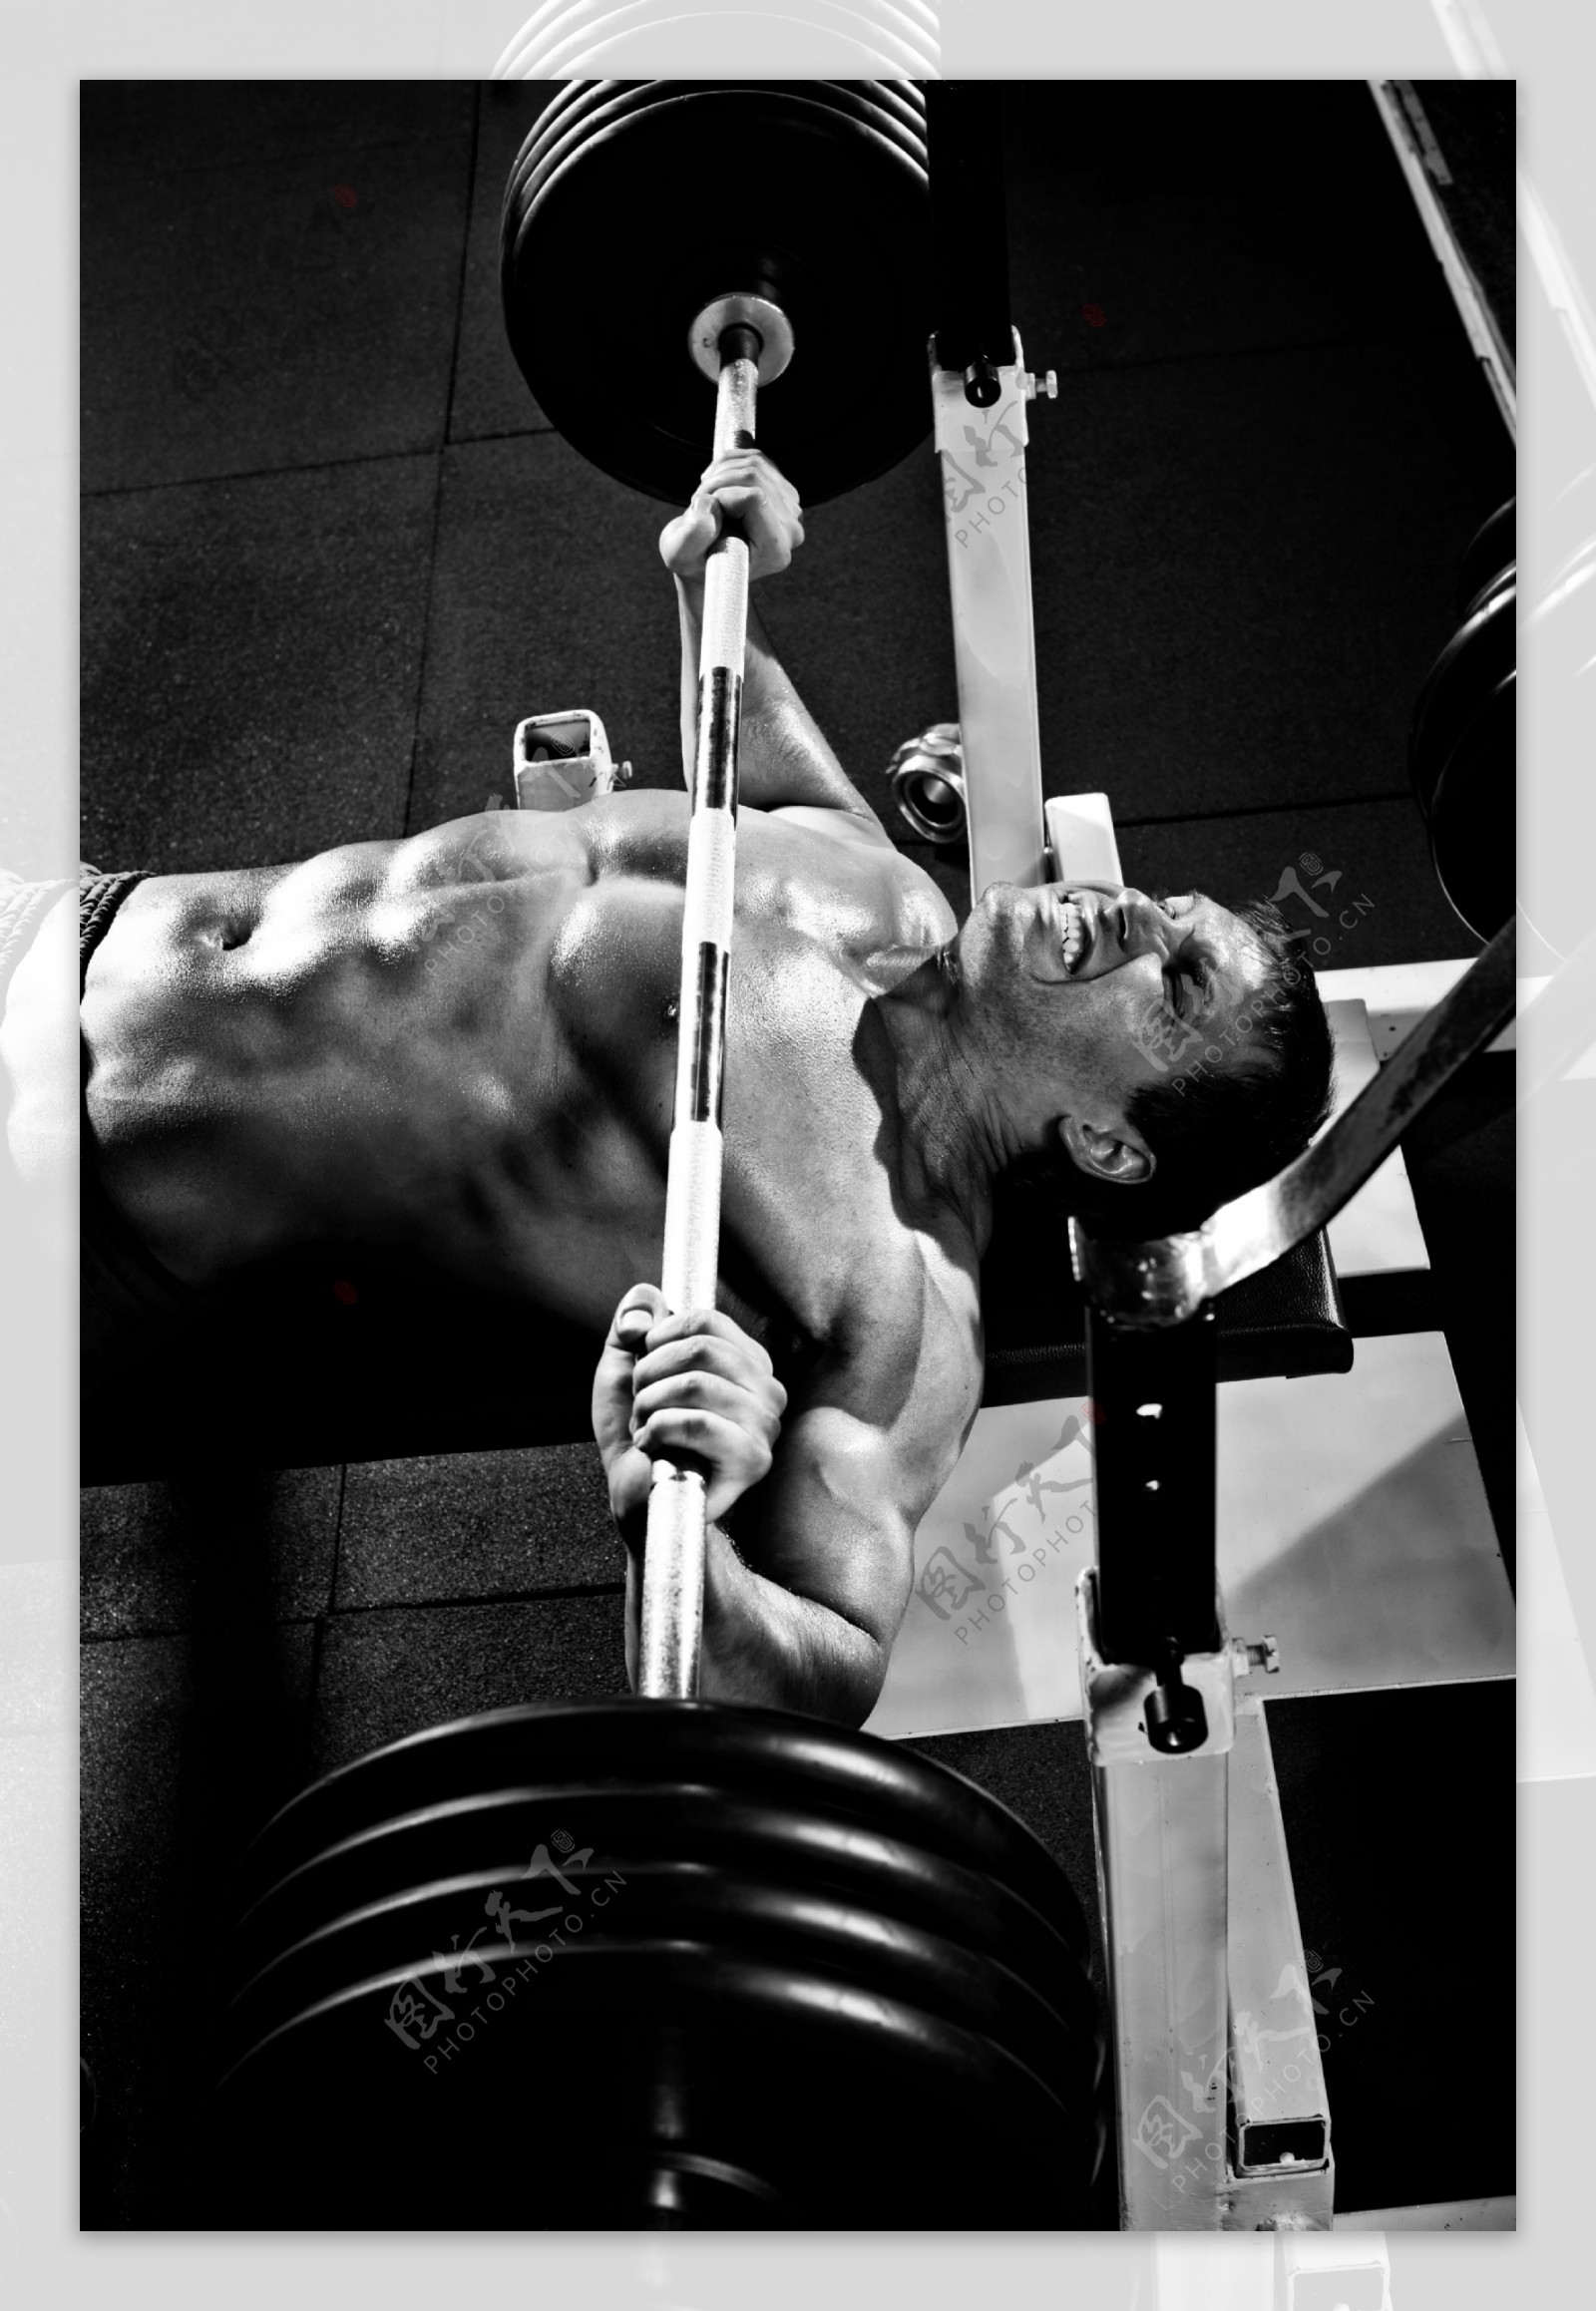 举重的肌肉男人图片